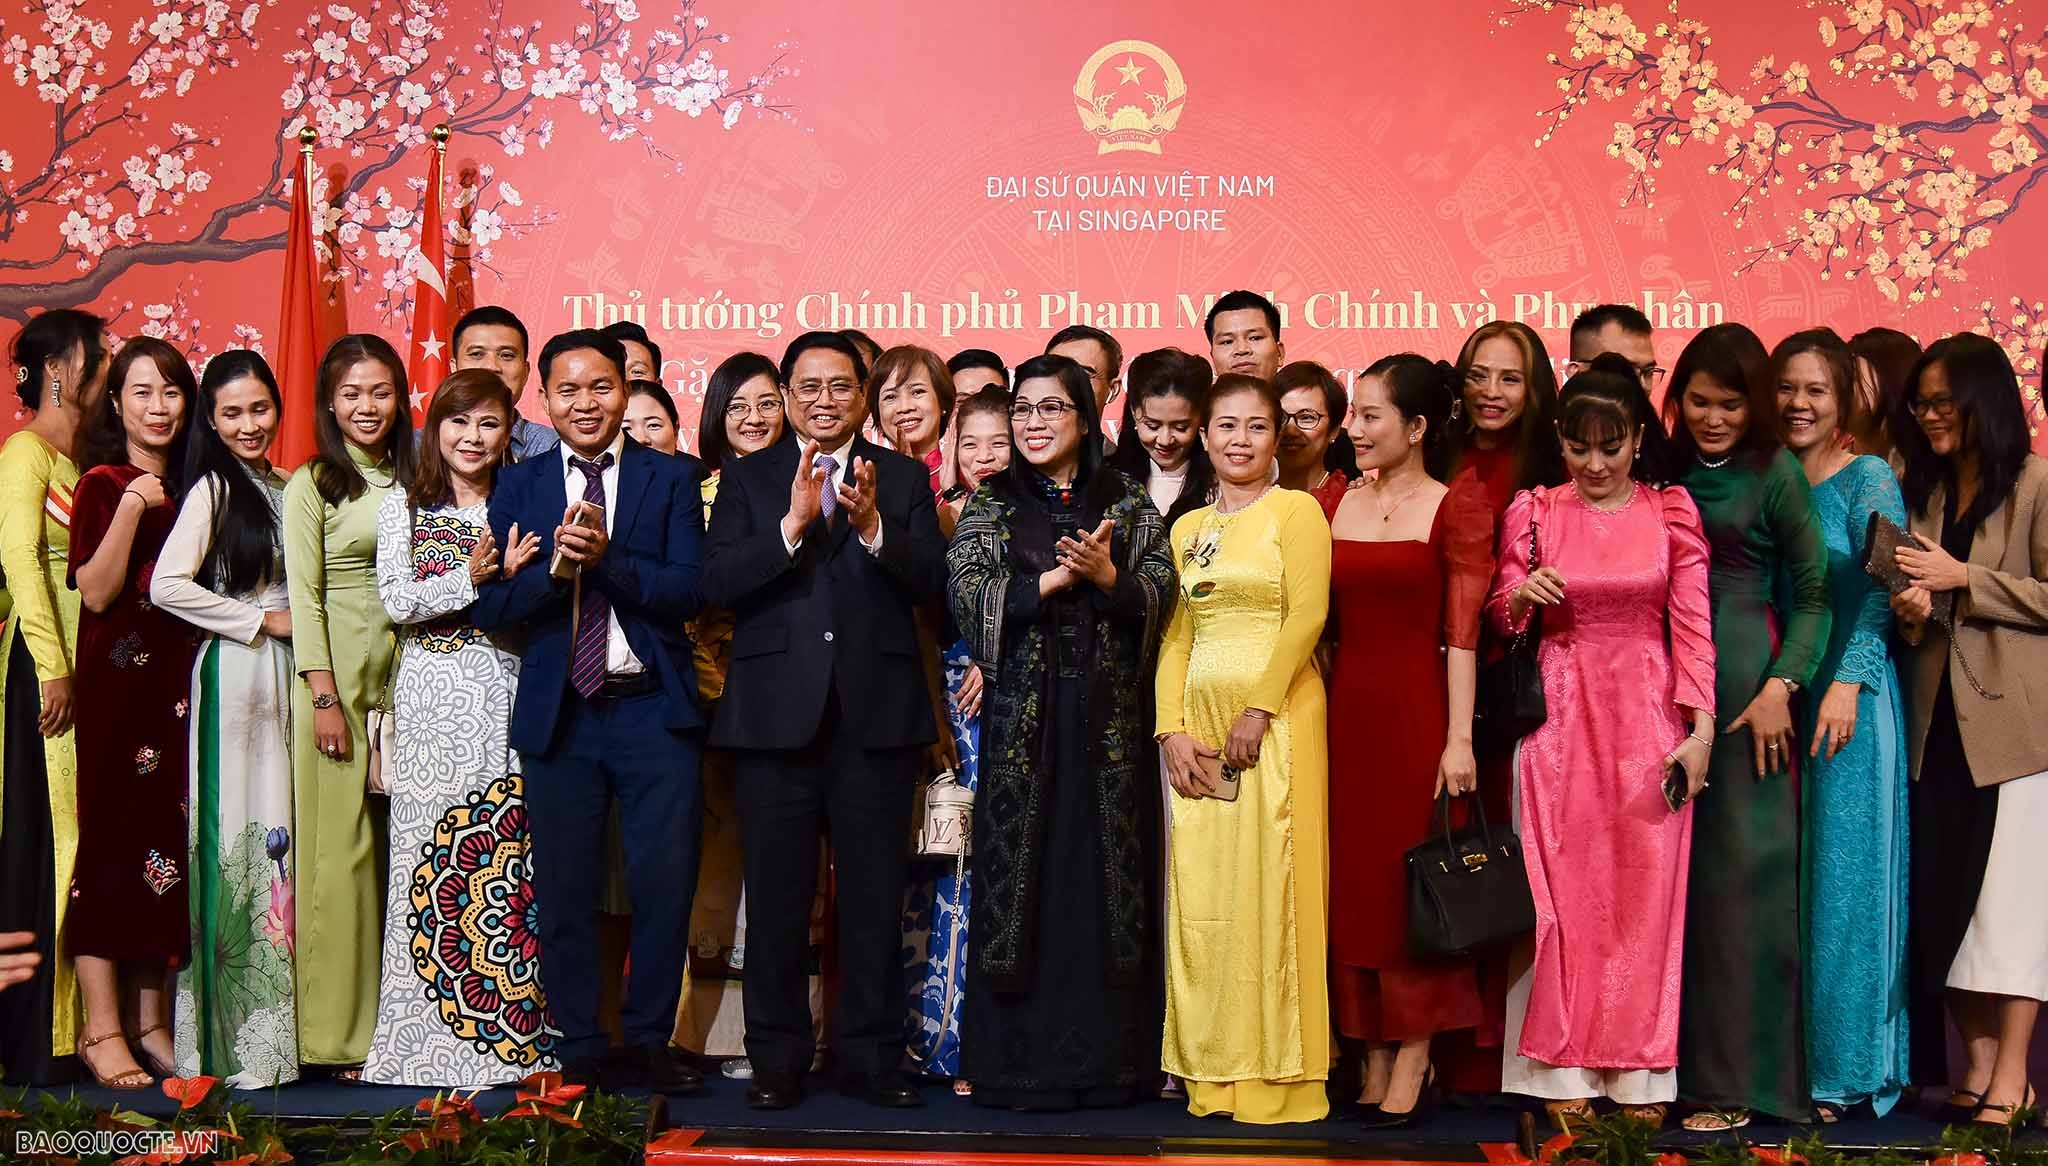 Thủ tướng Chính phủ: Cộng đồng người Việt tại Singapore là động lực, cội nguồn sức mạnh phát triển của đất nước